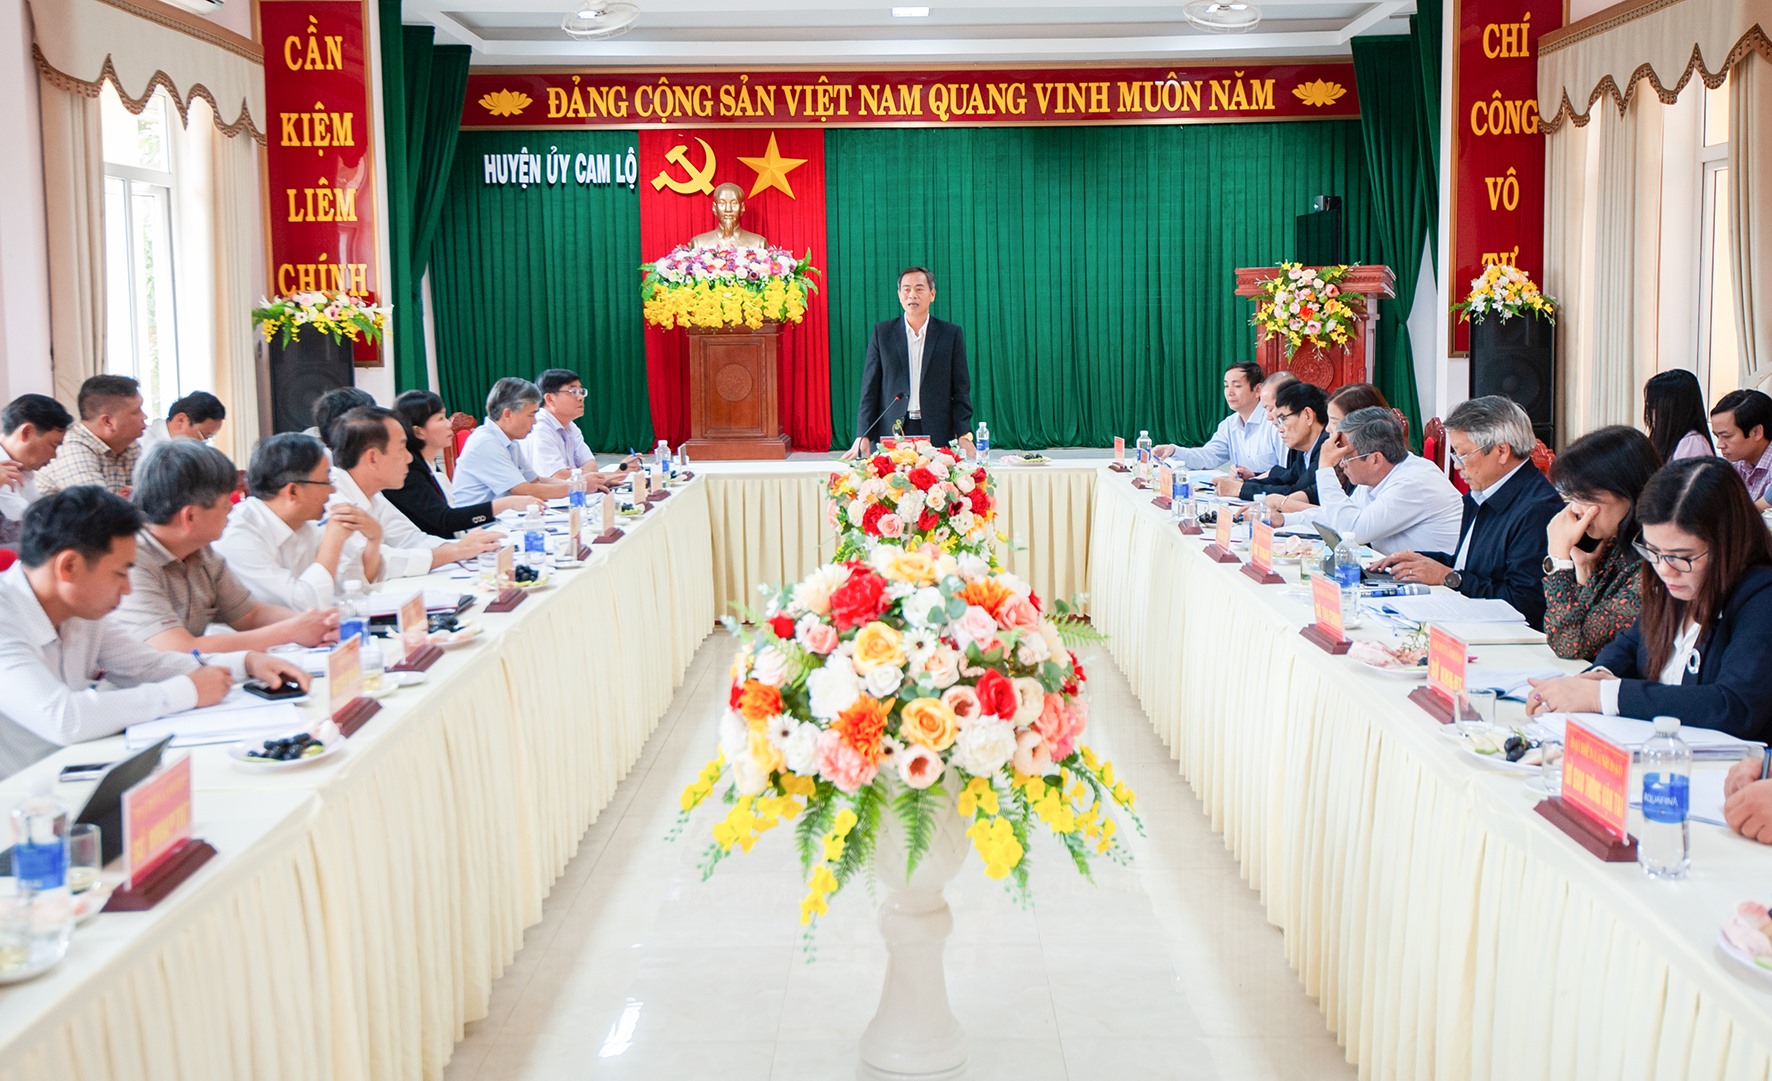 Phó Bí thư Thường trực Tỉnh ủy, Chủ tịch HĐND tỉnh Nguyễn Đăng Quang đề nghị huyện Cam Lộ xem xét, rà soát lại quy hoạch của địa phương - Ảnh: Trần Tuyền